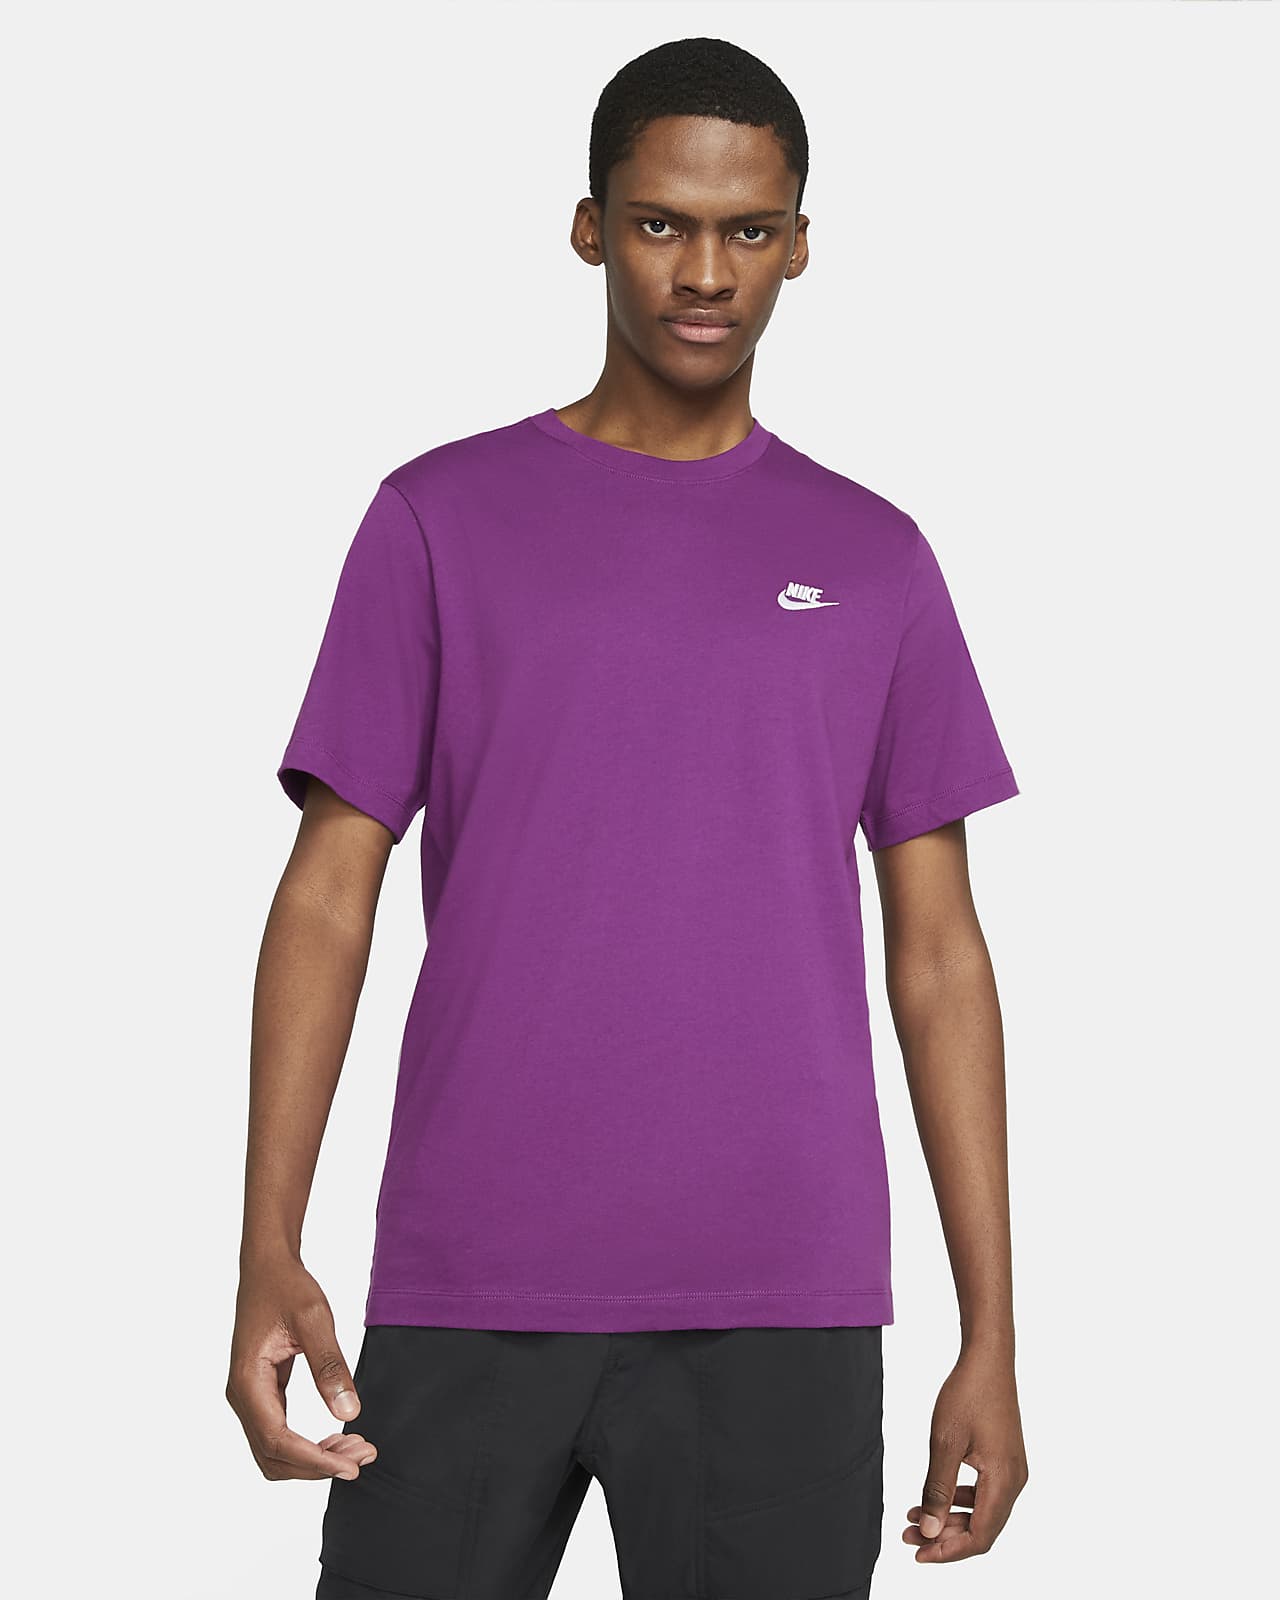 nike purple tshirt